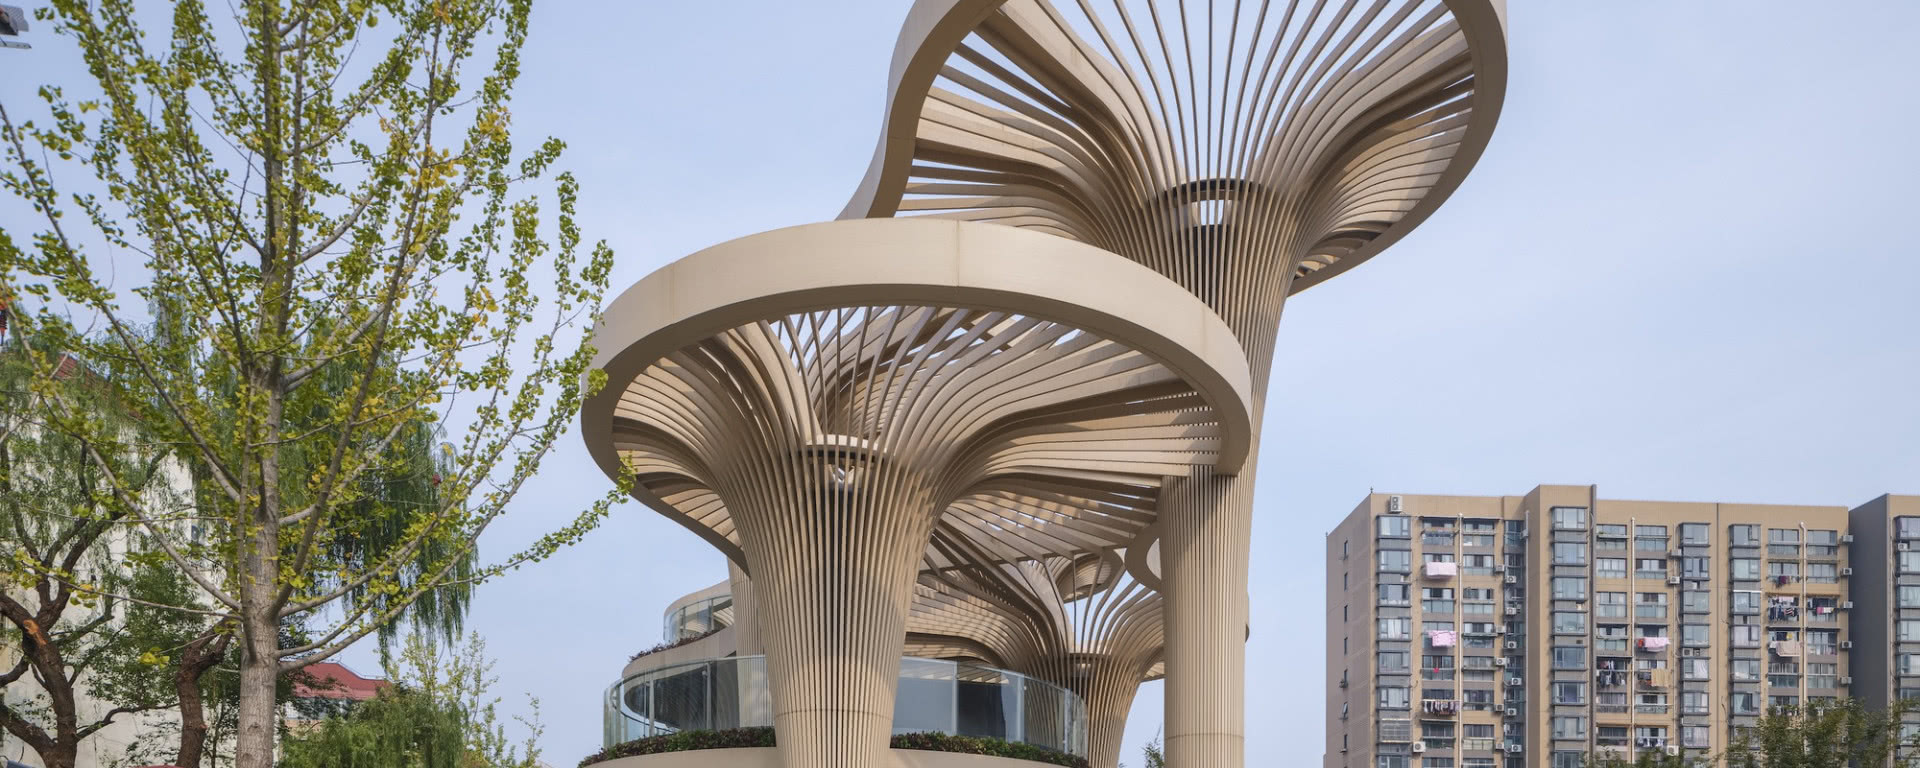 Ta galeria handlowa przypomina gigantyczne grzyby! Architektura bliska naturze to znak rozpoznawczy jej projektanta